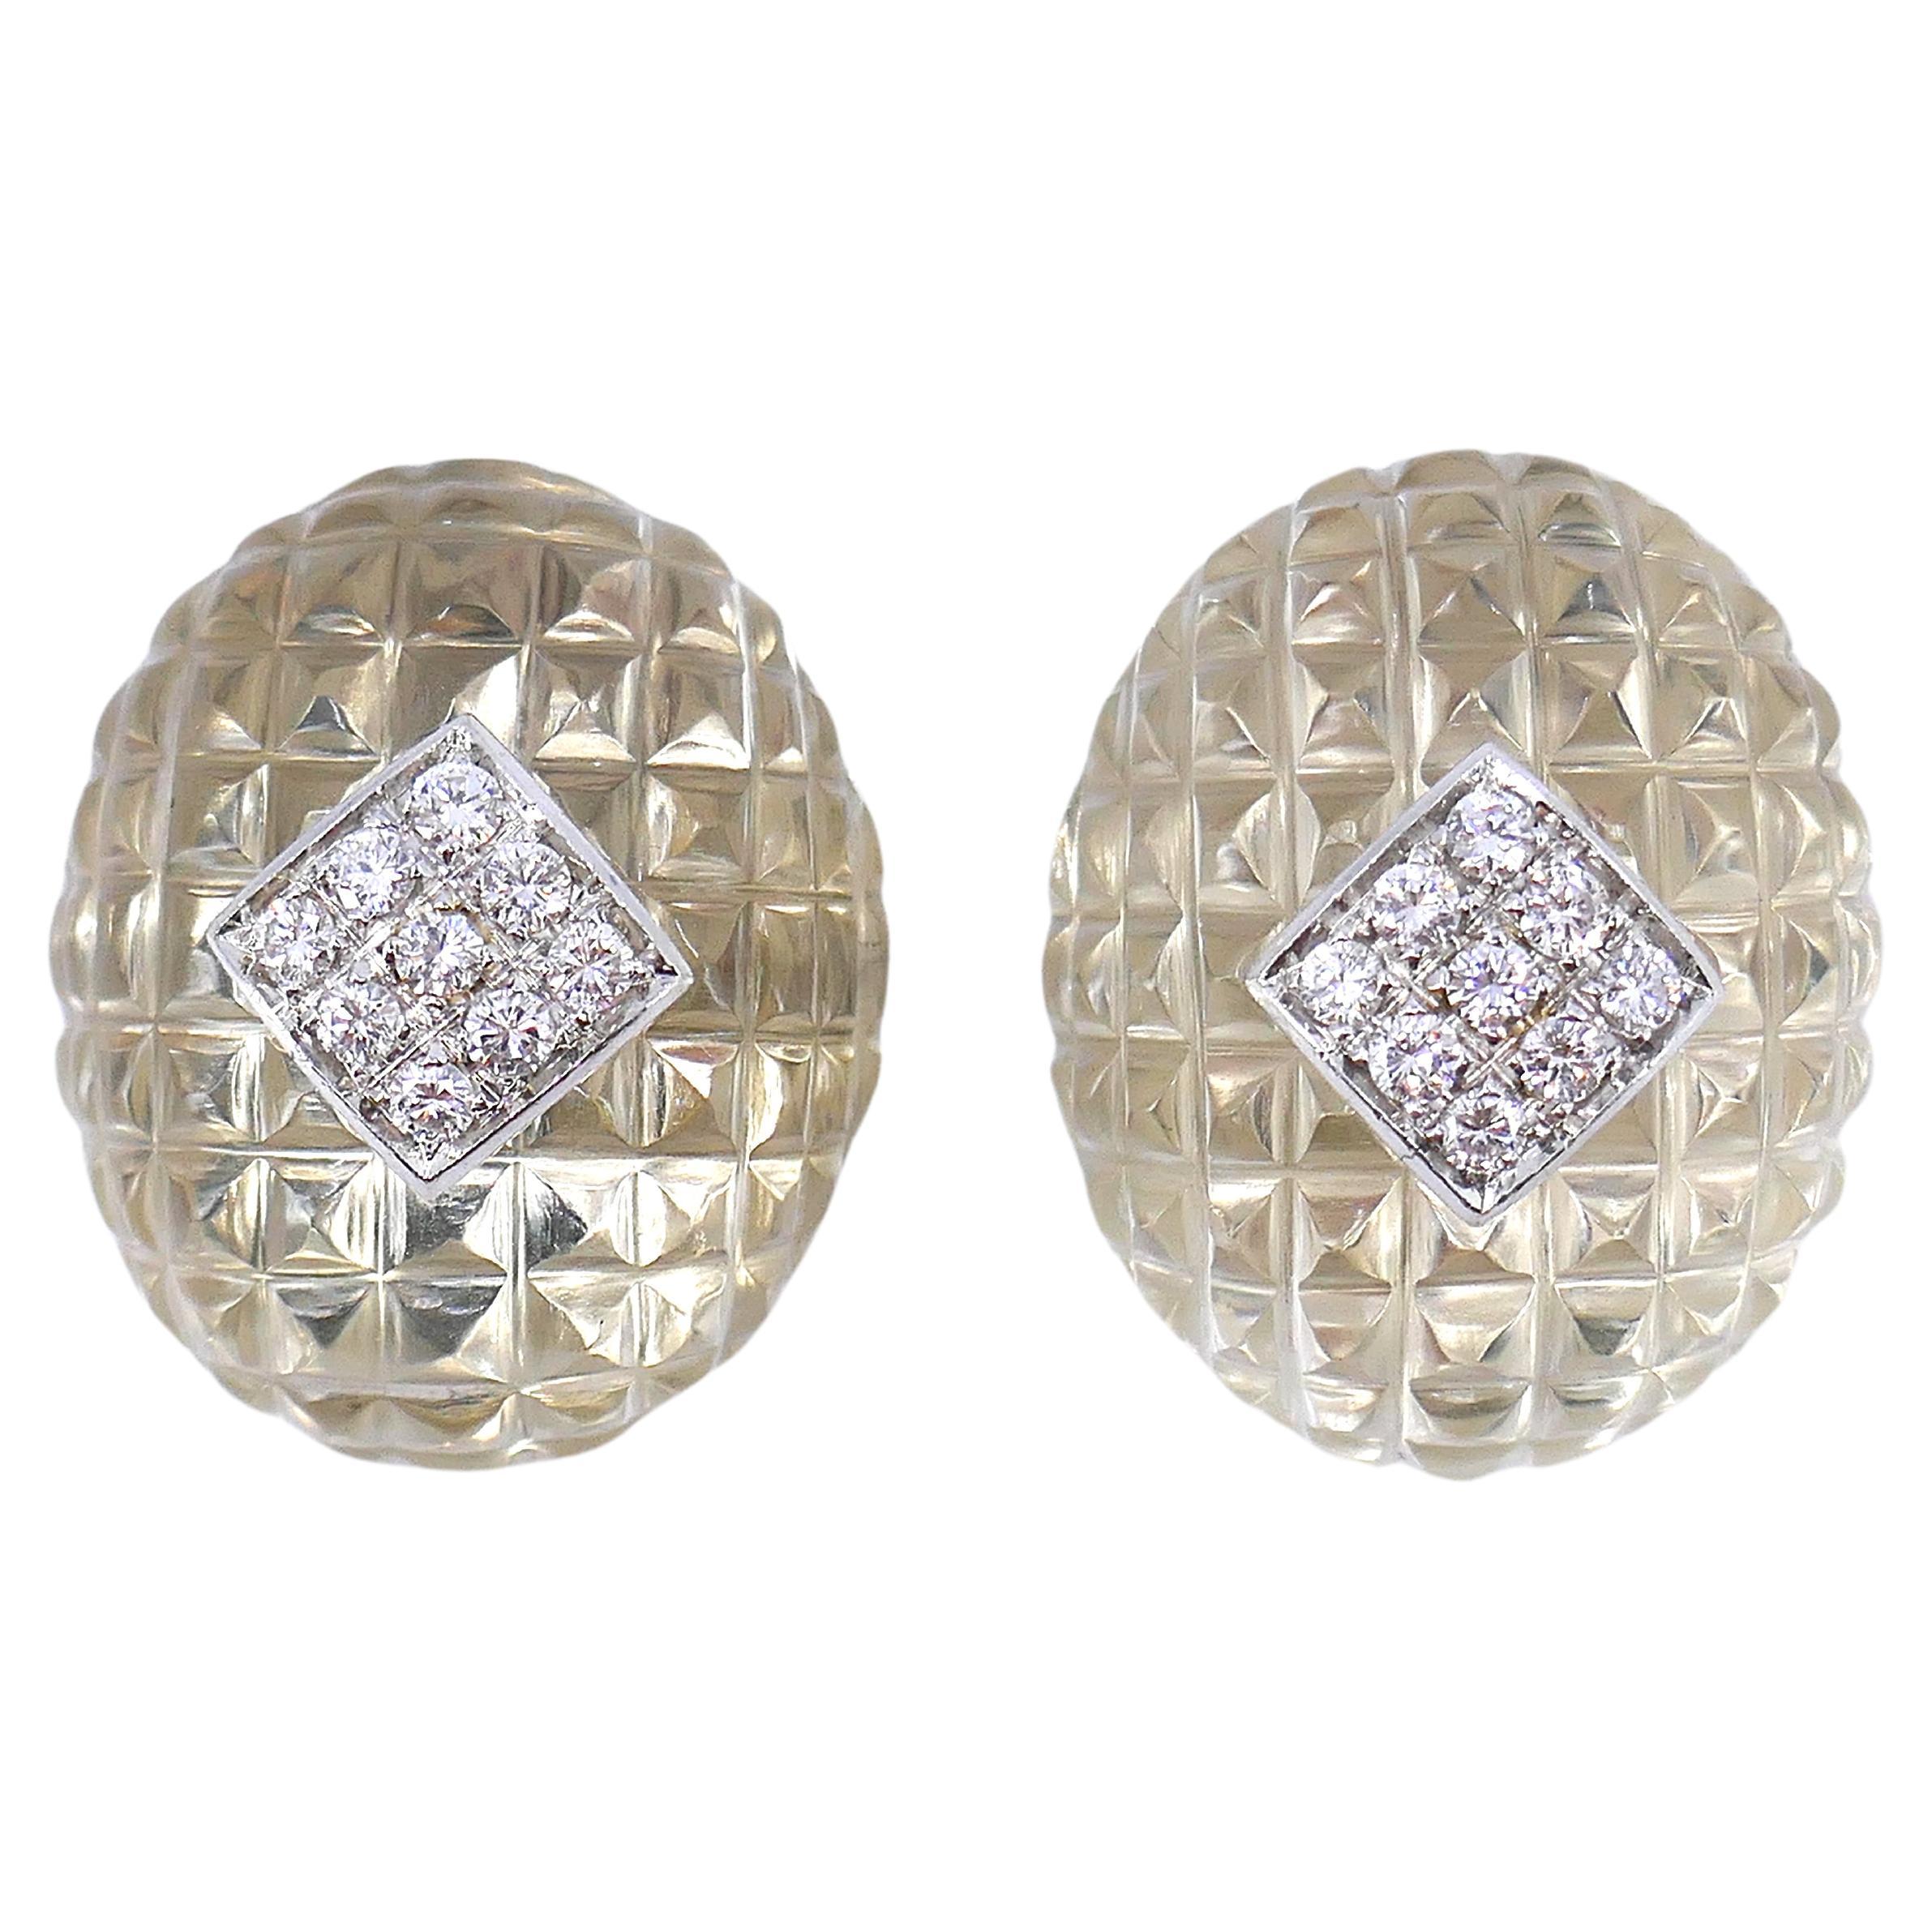 Van Cleef & Arpels Carved Crystal and Diamond Earrings clip-on